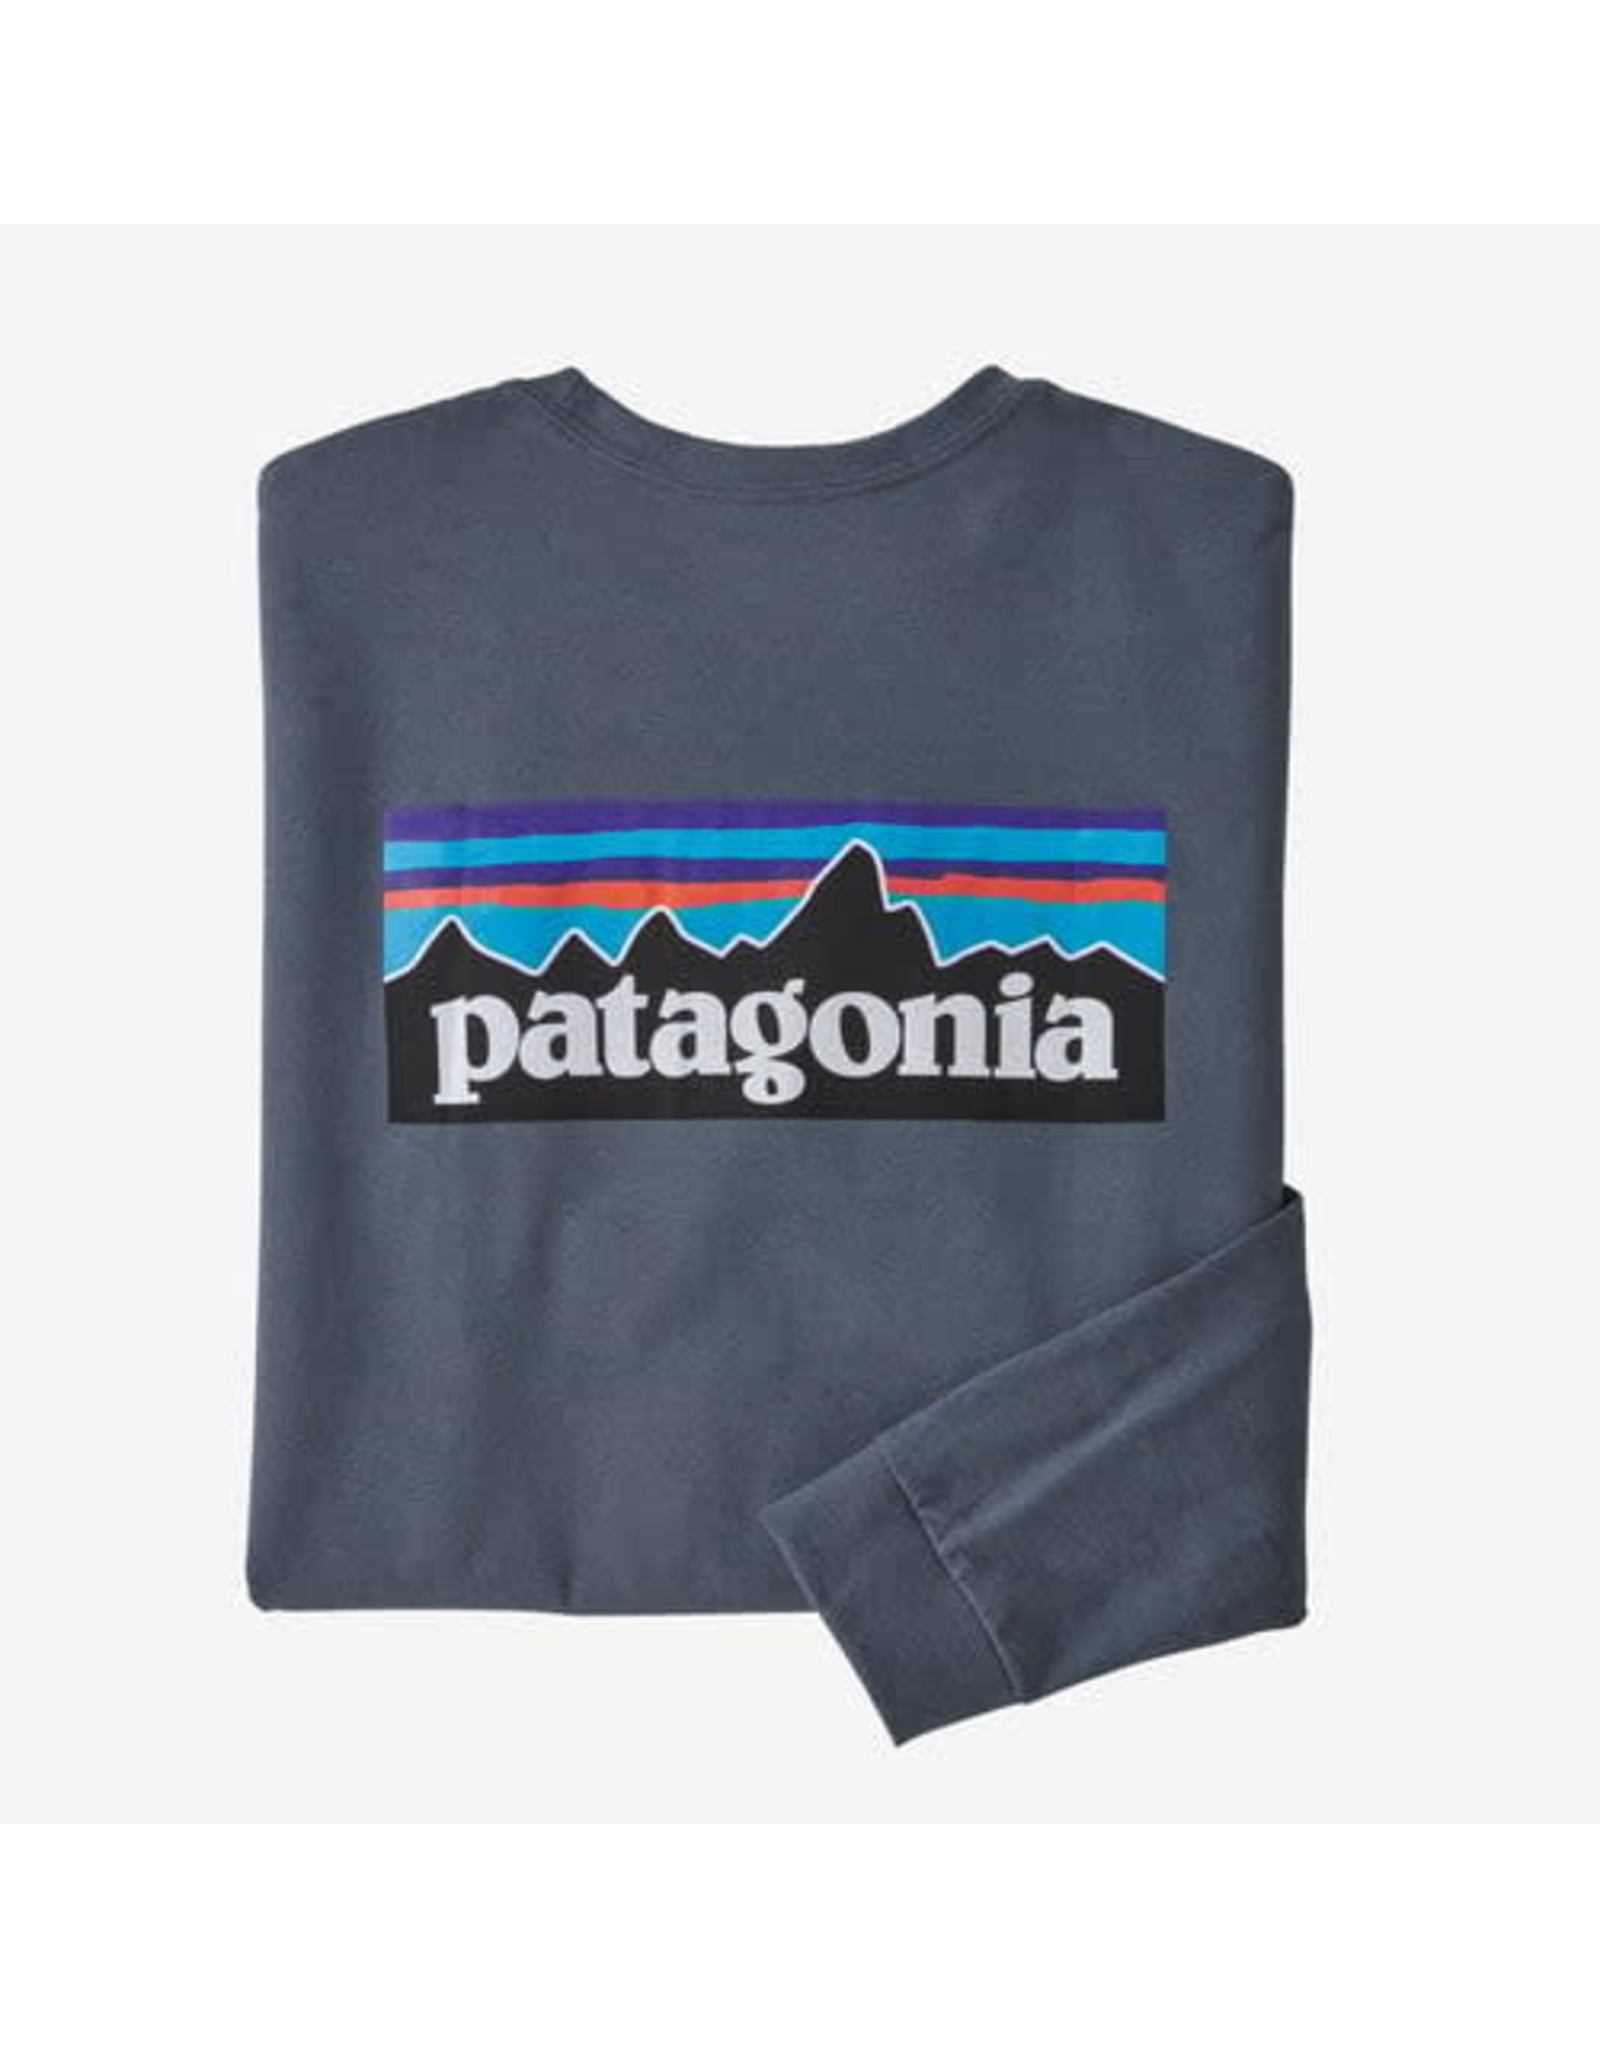 Patagonia Patagonia M's Long-Sleeved P-6 Logo Responsibili-Tee